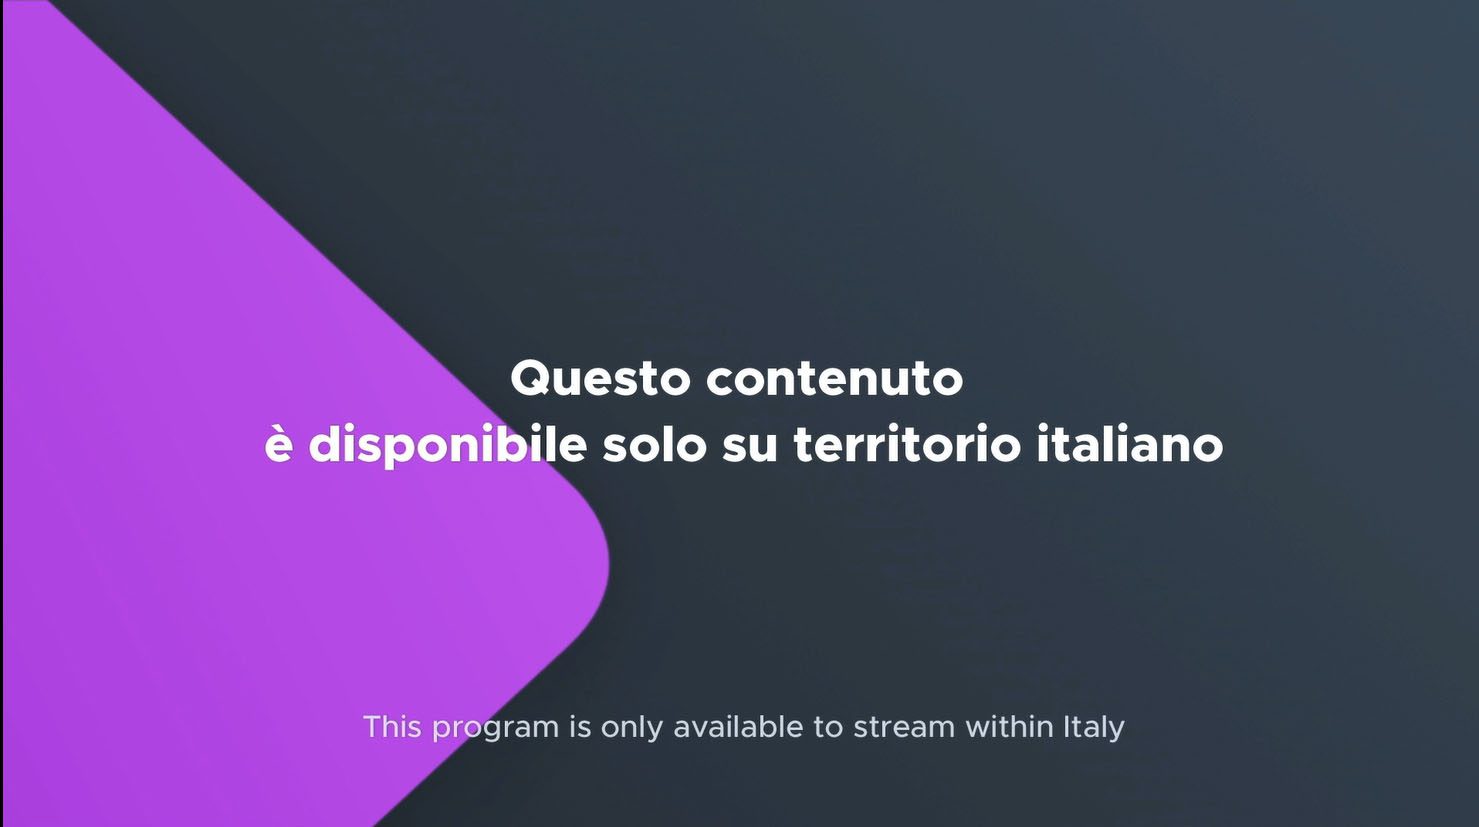 Migliore VPN per vedere la TV italiana all'estero e passare blocchi Mediaset